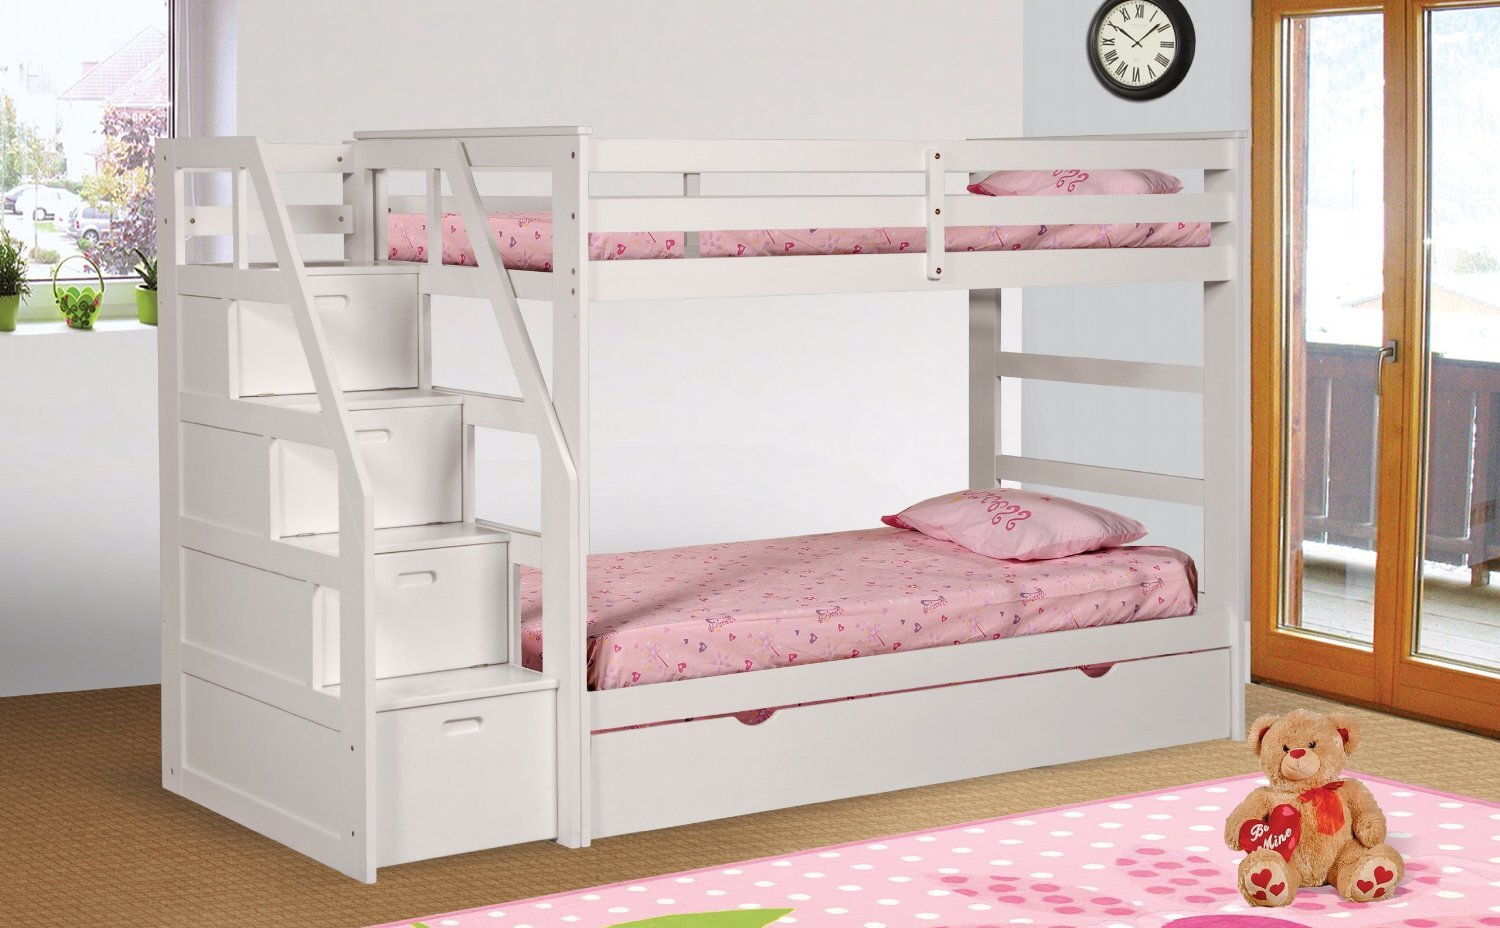 Mẫu giường classic này sẽ thích hợp với những bé gái yêu thích sự đơn giản